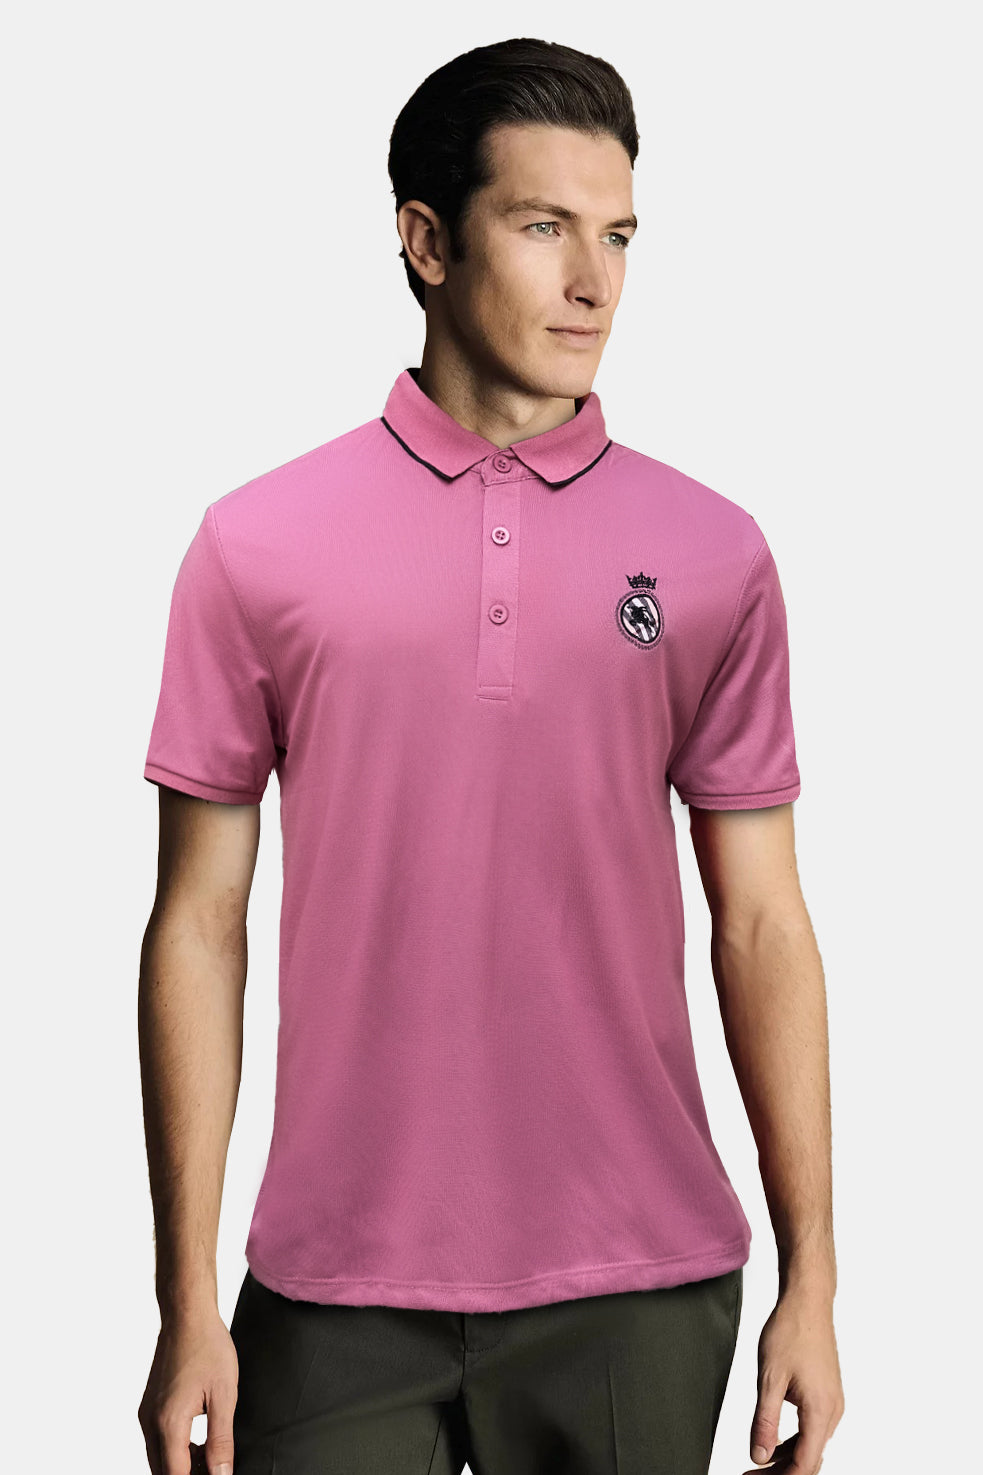 Emblem Polo Shirt - 0124004